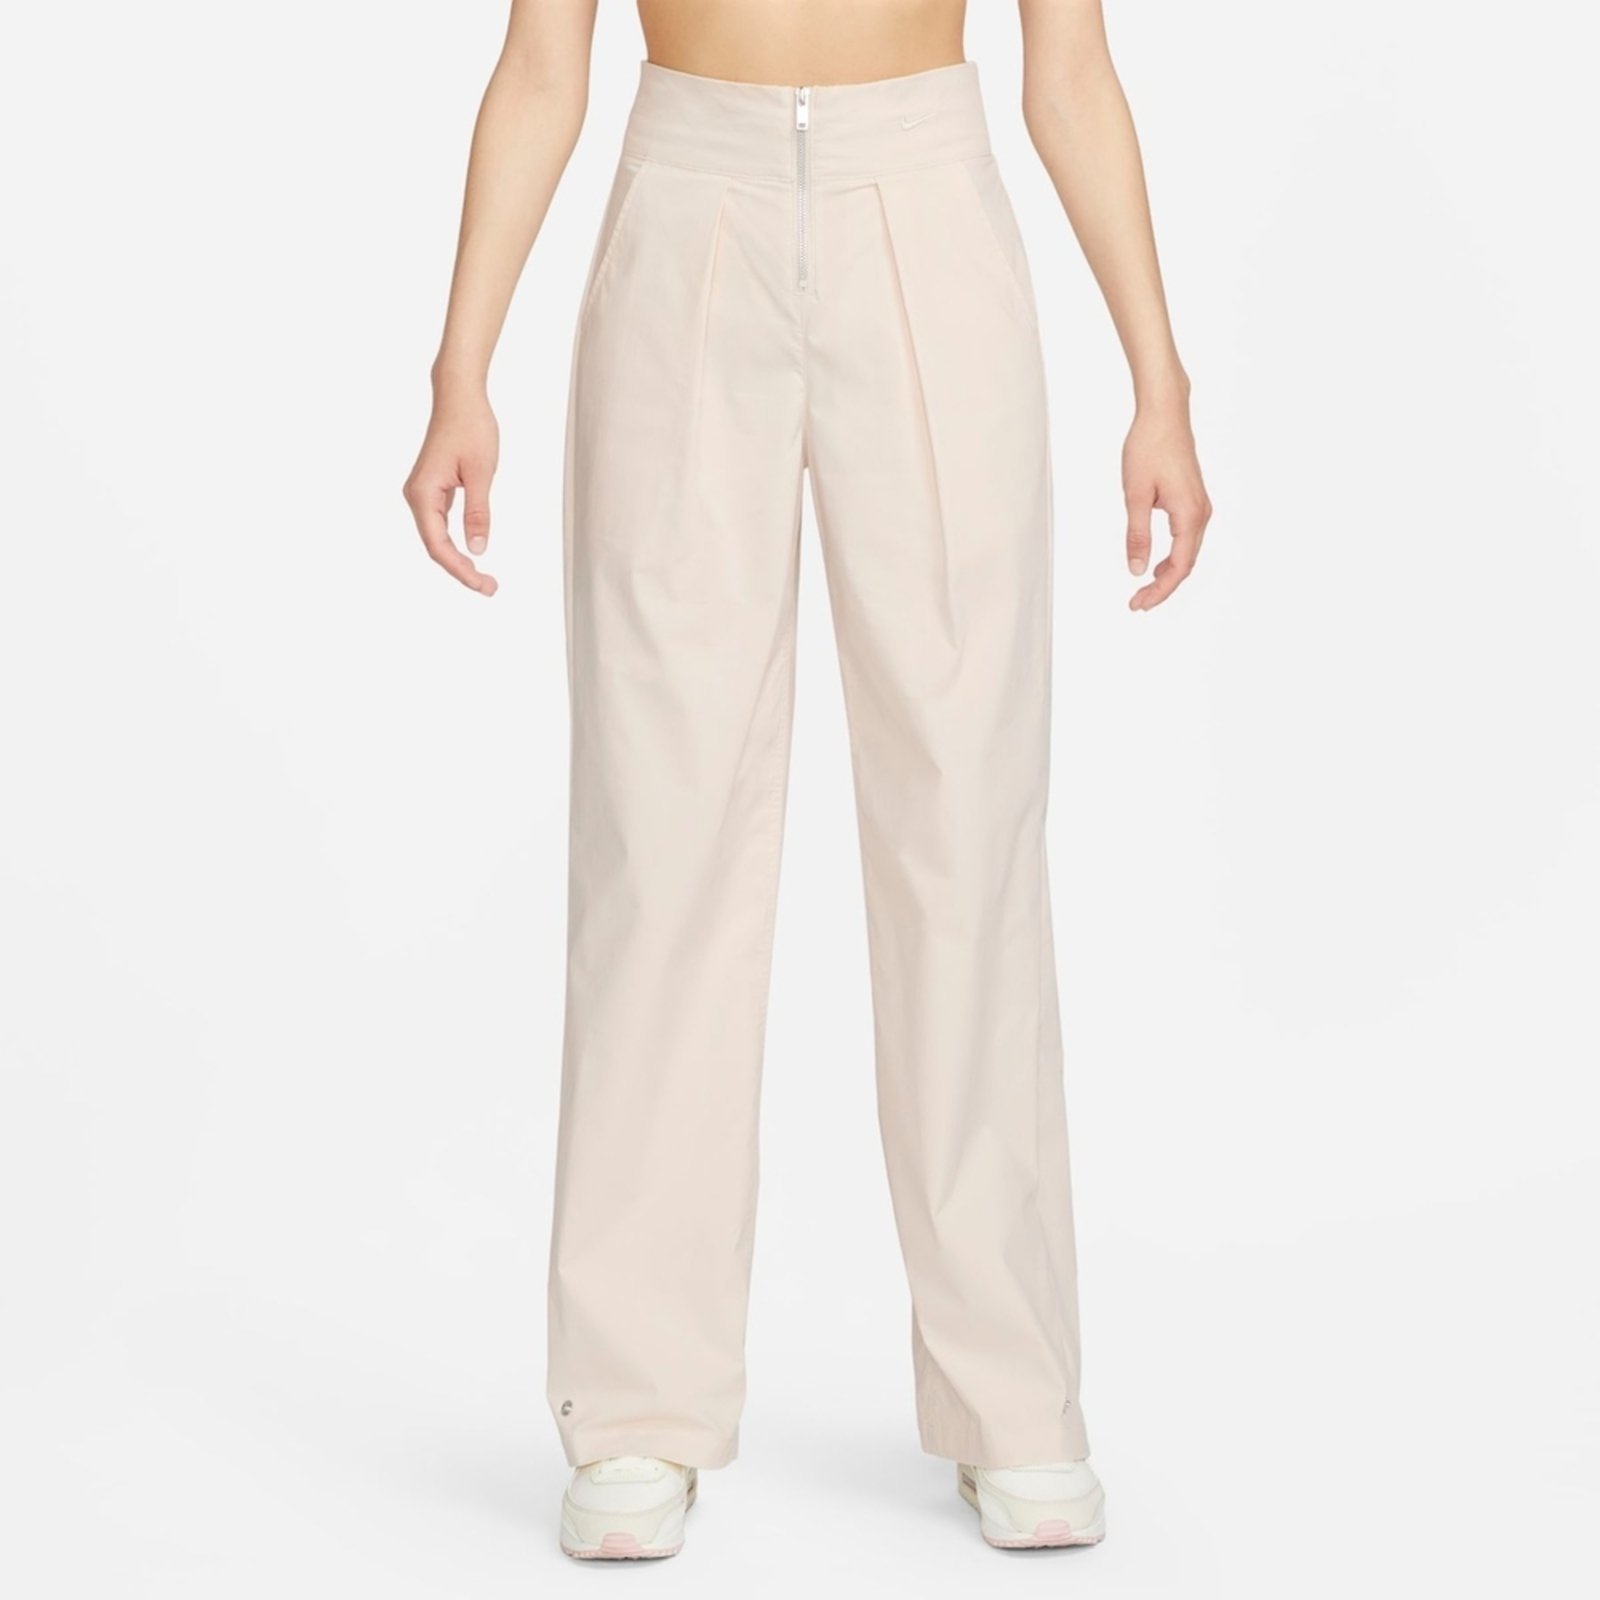 Calça Nike Sportswear Pant Woven Core - Feminina, pant core